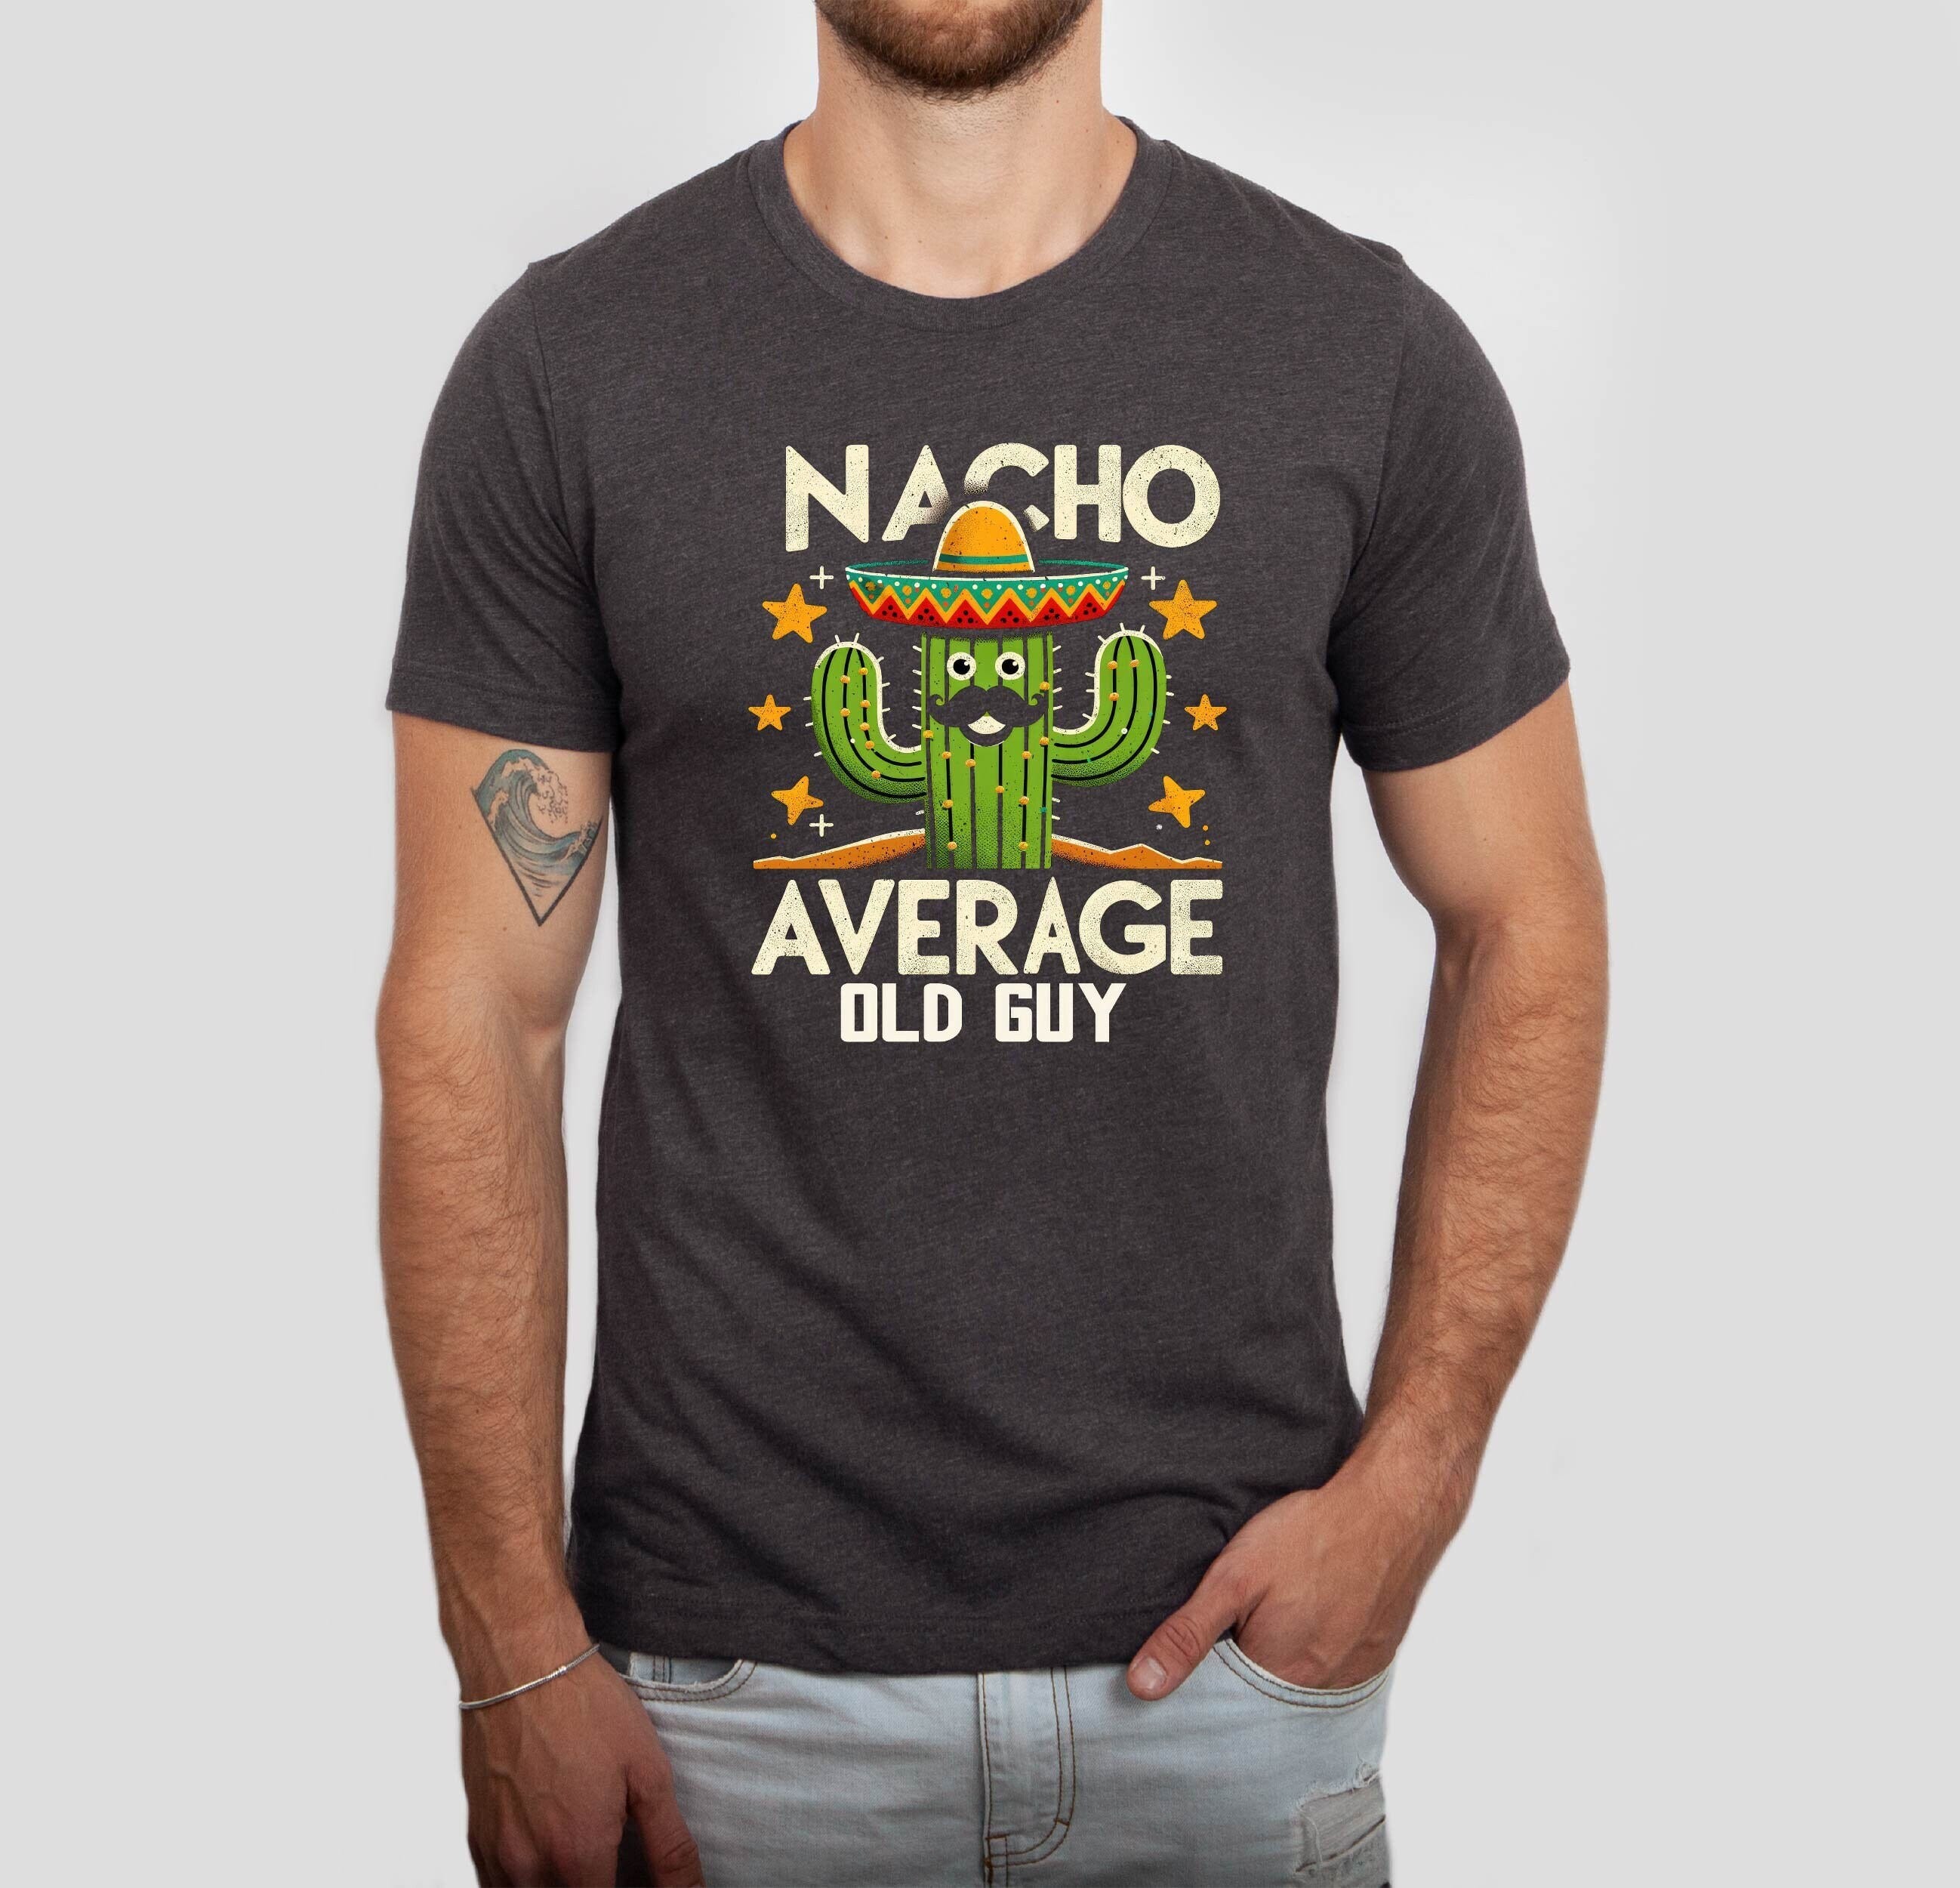 Nacho Average Old Guy Shirt, Mexican Food Tshirt, Humorous Senior Men Tee, Funny Nacho Fiesta Unisex Tshirt